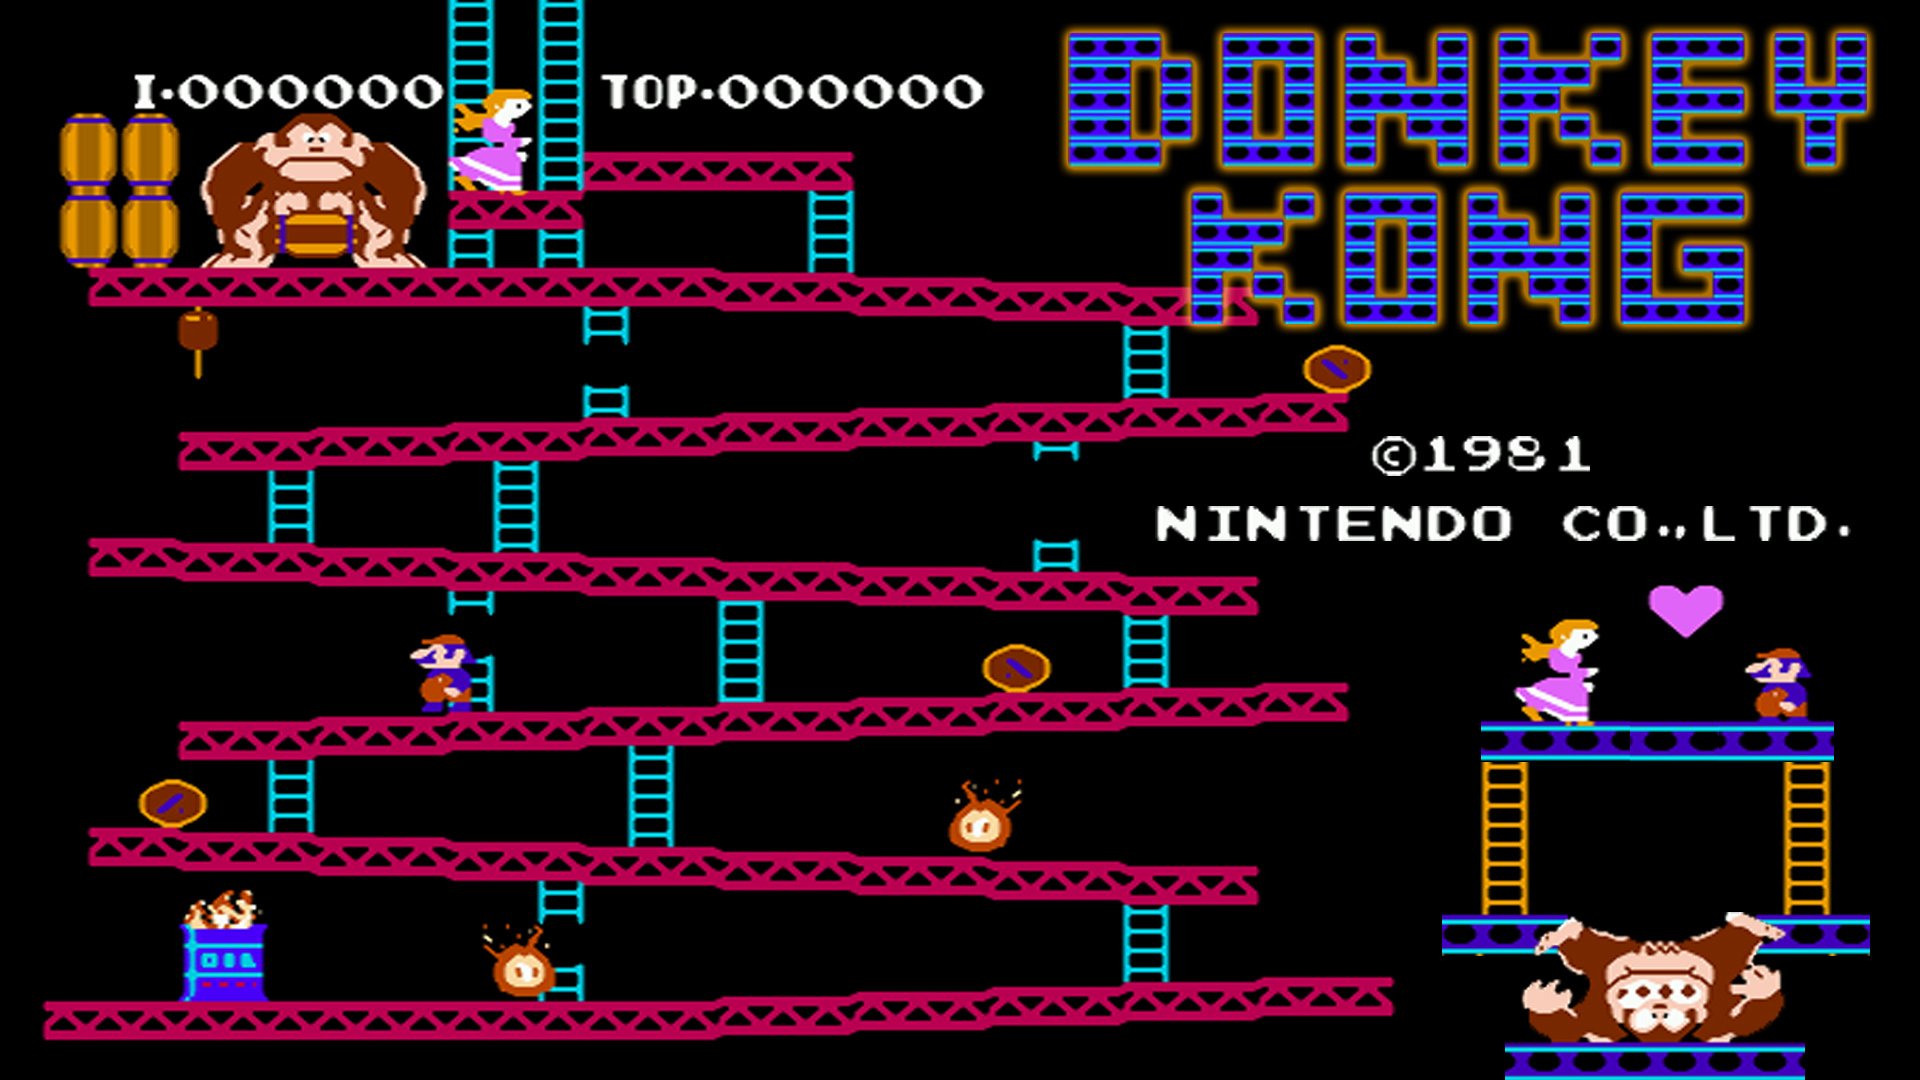 Wallpaper game, Nintendo, gorilla, Donkey Kong, 1981, Shigeru Miyamoto,  Coleco images for desktop, section игры - download